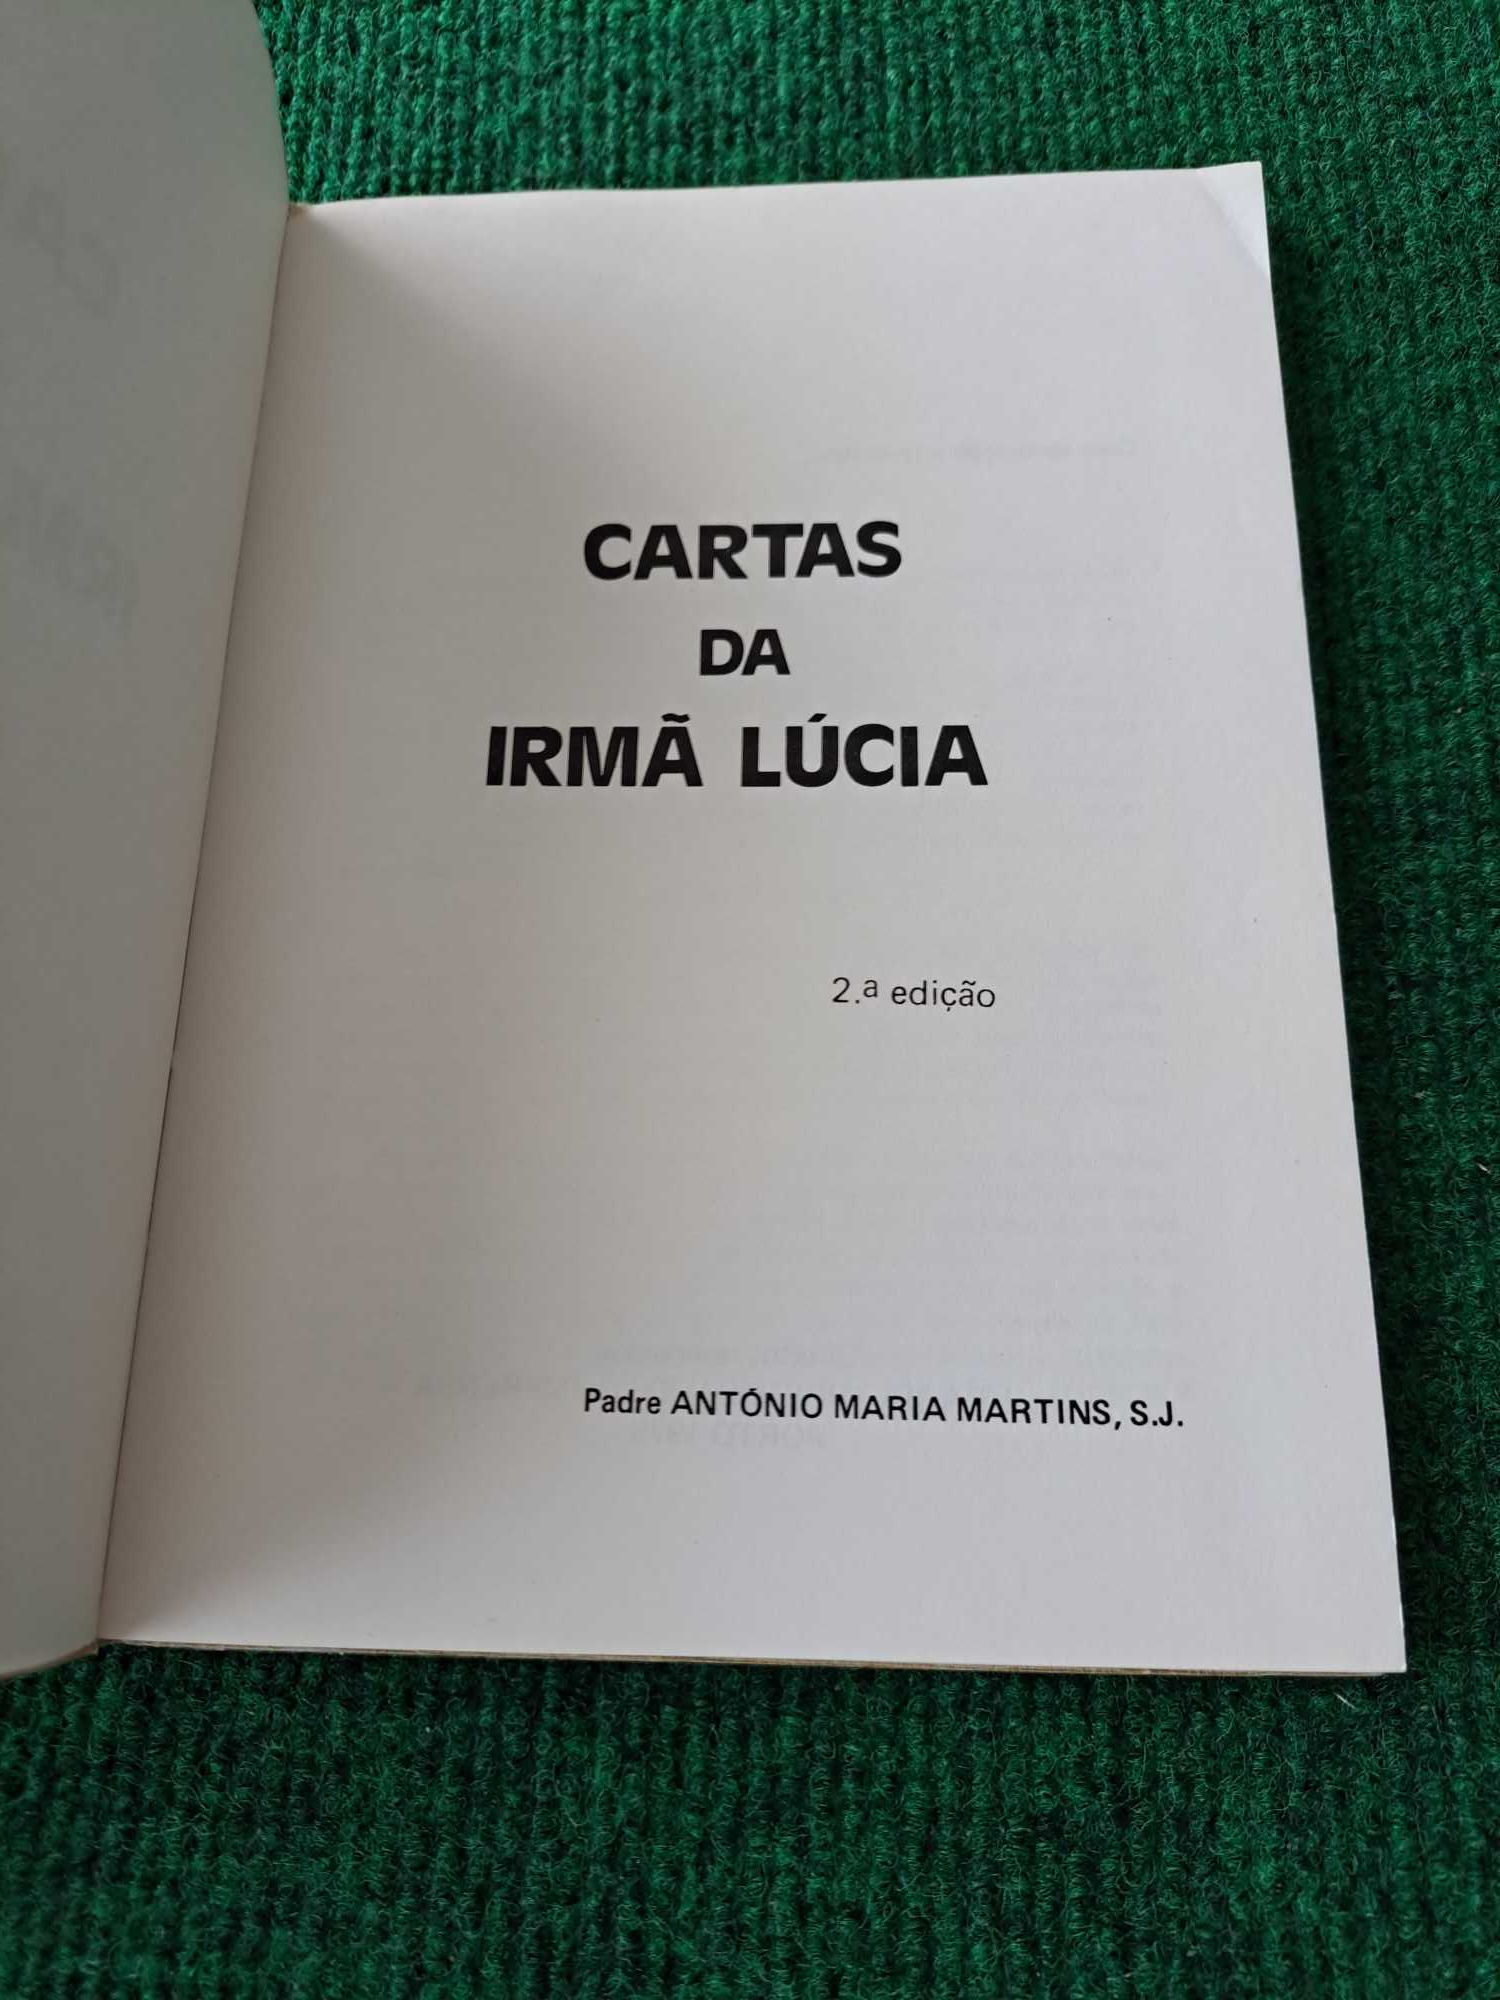 Cartas da Irmã Lúcia - Padre António Maria Martins, S.J.